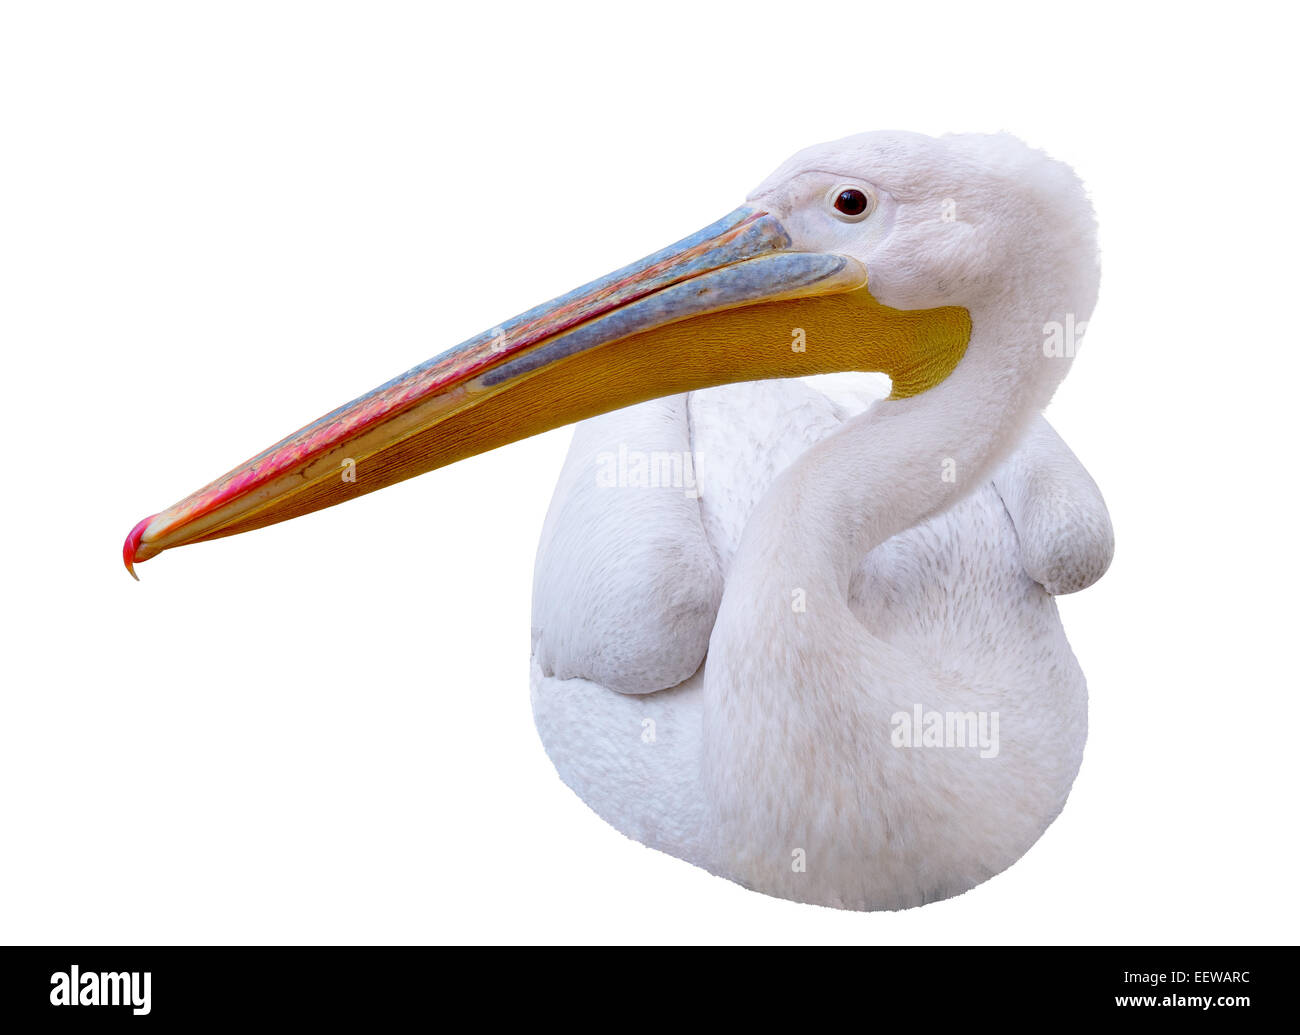 Pelican seduta lateralmente guarda nell'immagine. Isolato su sfondo bianco Foto Stock